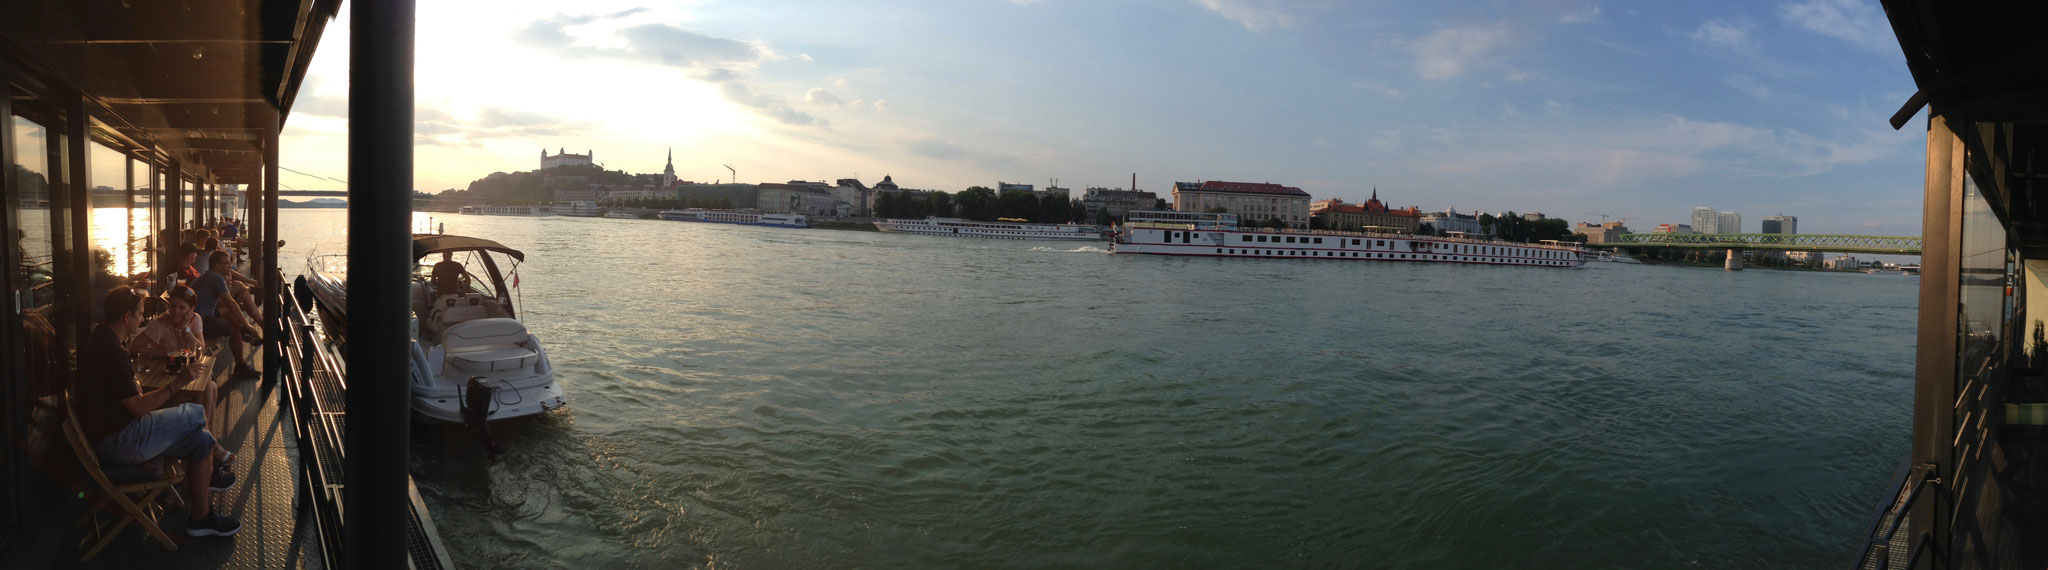 Bratislava river Donau